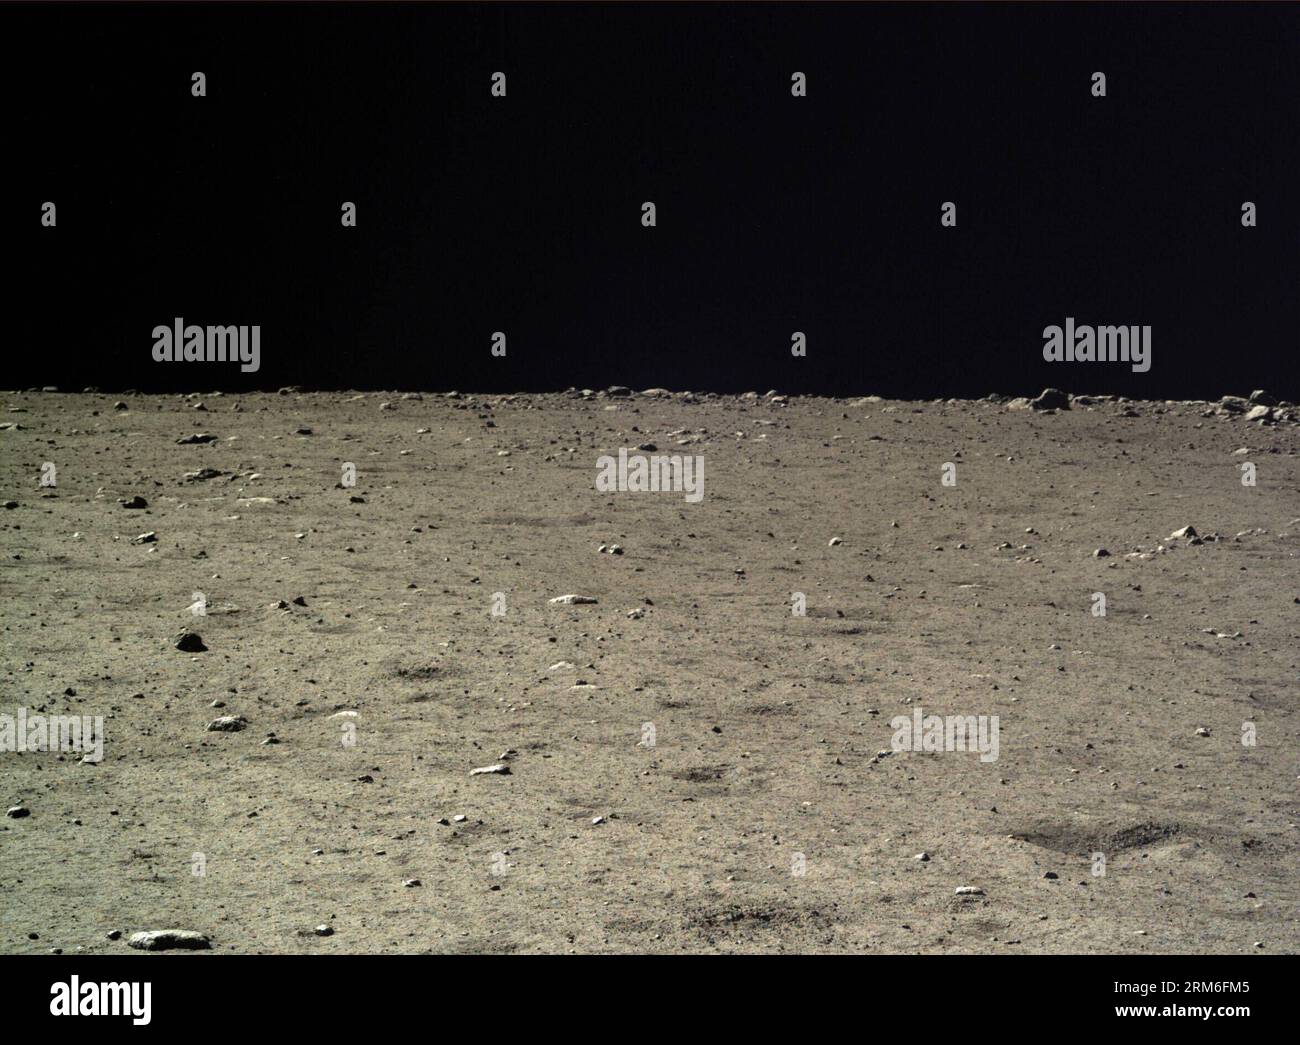 (140110) -- PECHINO (Xinhua) -- foto scattata dalla macchina fotografica del lander lunare Chang e-3 il 18 dicembre 2013 mostra il paesaggio lunare durante il primo cerchio del giorno lunare della missione della sonda lunare Chang e-3. La Chinese Academy of Sciences ha pubblicato un gruppo di foto del paesaggio lunare dalle telecamere sulla sonda lunare cinese Chang e-3 venerdì. Chang e-3, con il primo rover lunare del paese a bordo, è atterrato sulla luna il 14 dicembre 2013, segnando la prima volta che la Cina ha inviato una navicella spaziale su una terra morbida sulla superficie di un corpo extraterrestre. (XINHUA) (CJQ) CHINA-SCIENCE-LUNAR PROBE-CHANG E-3-PHOTOGRAPH (CN) PUB Foto Stock